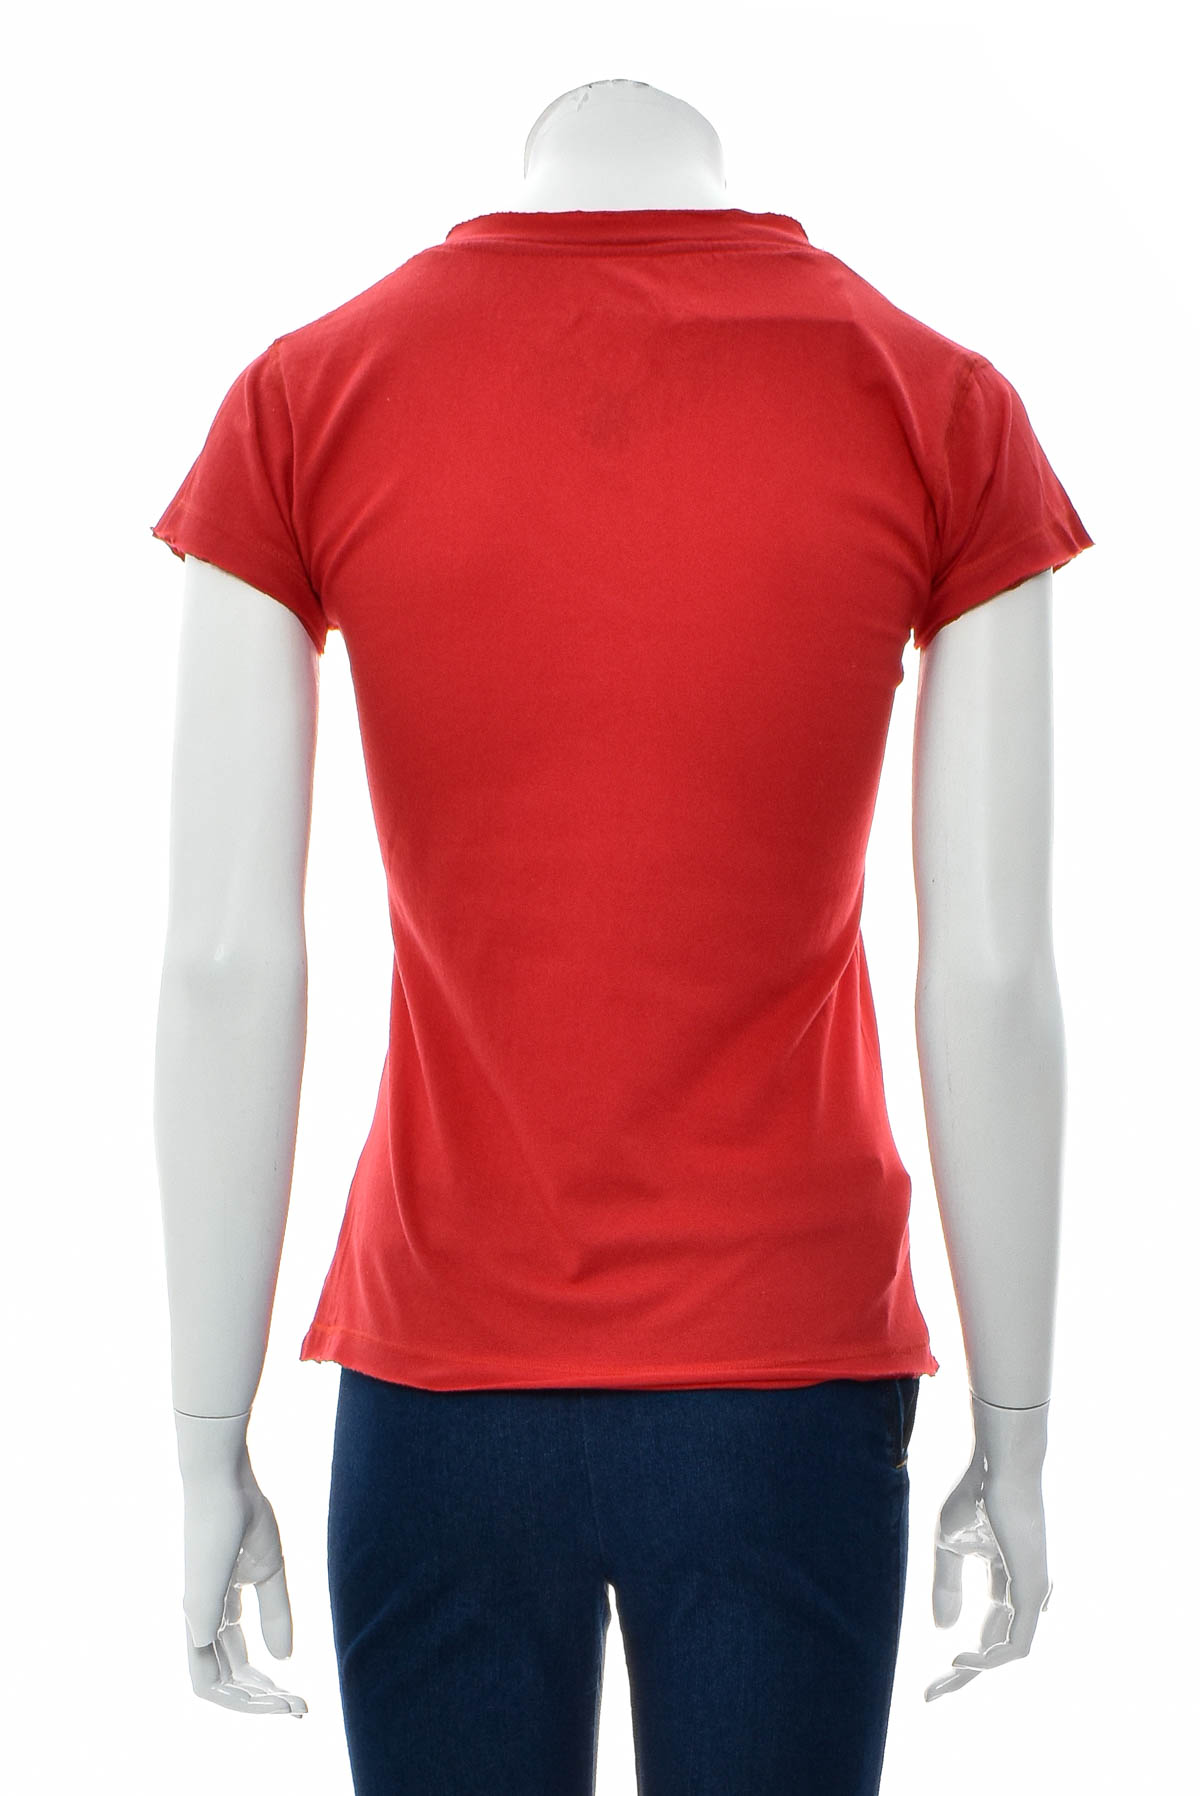 Women's t-shirt - Safon - 1